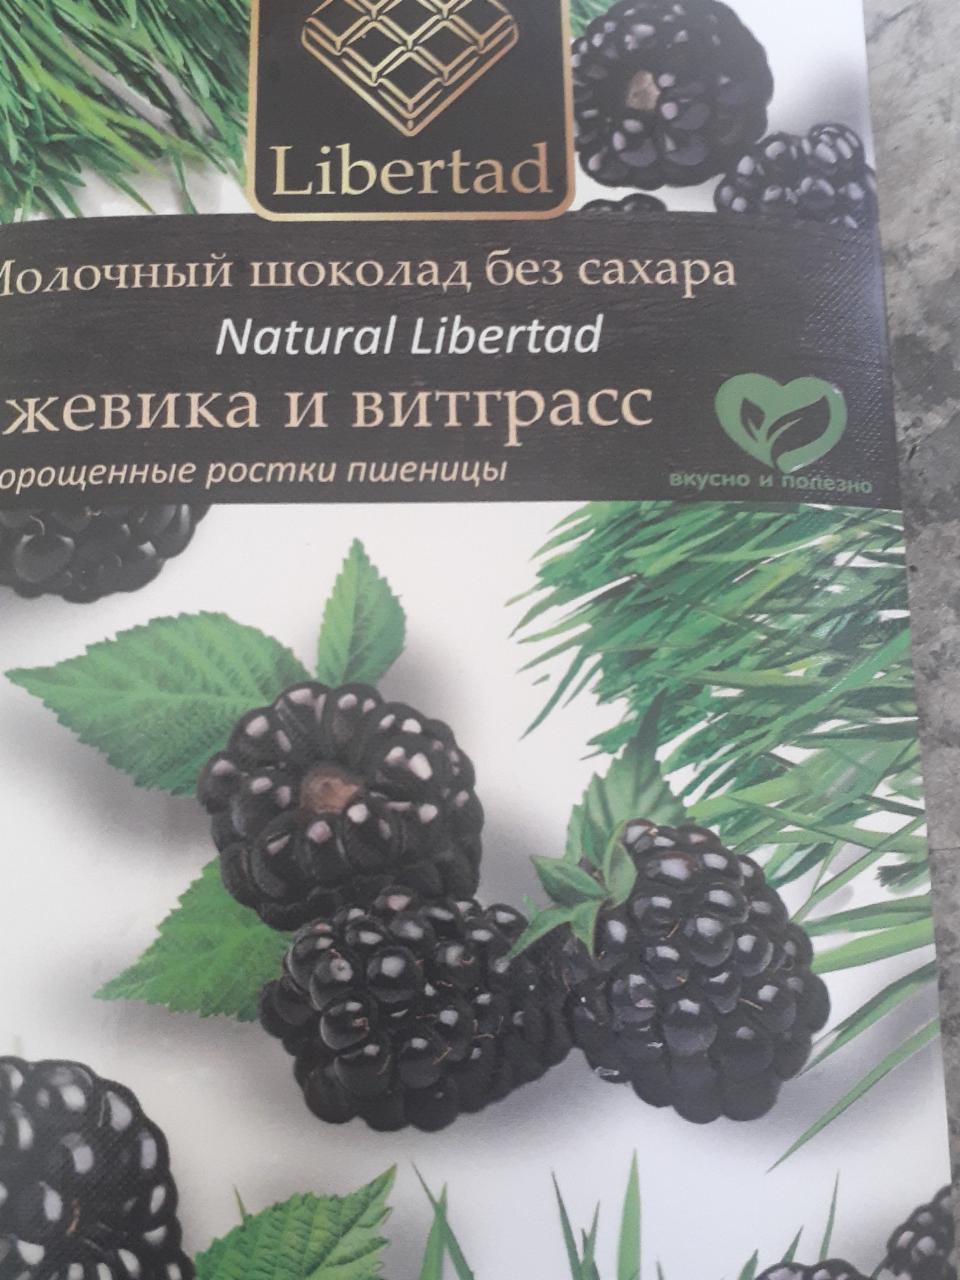 Фото - Молочный шоколад без сахара Ежевика и витграсс Liberted